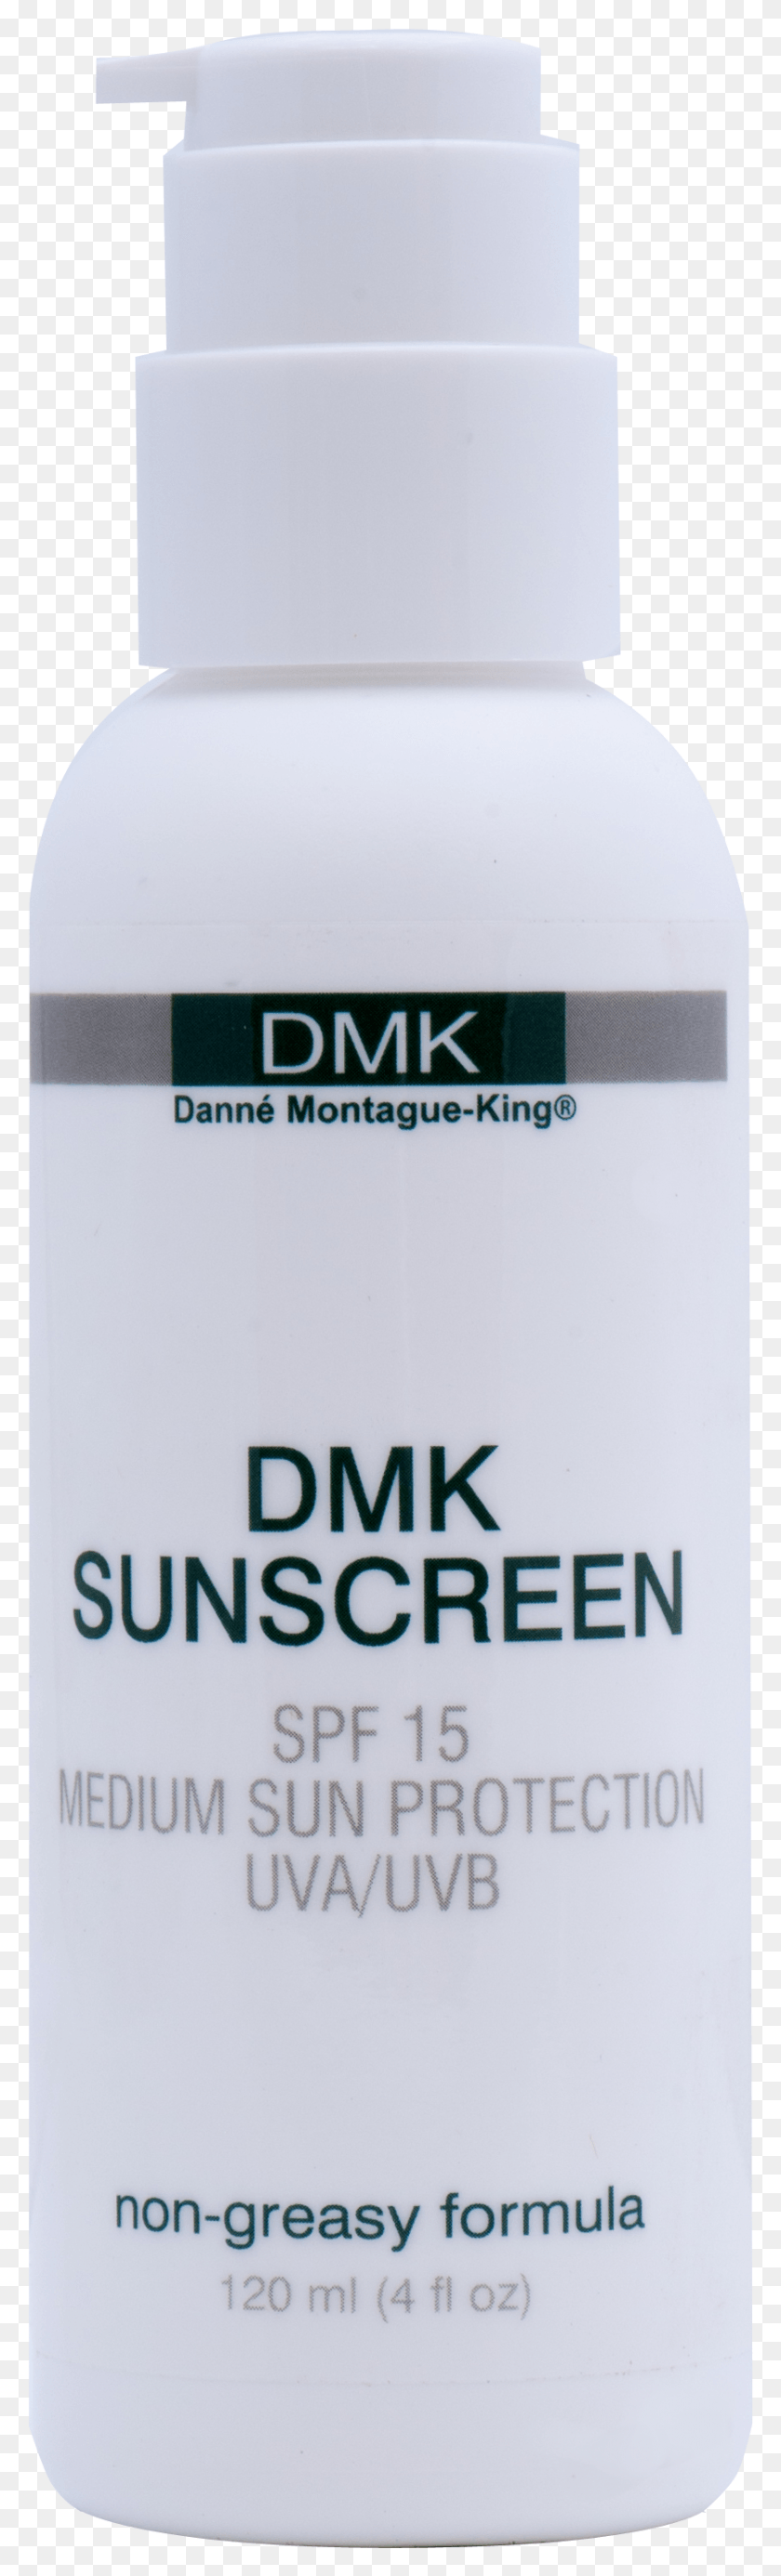 837x2911 Descargar Png Dmk Sunscreen Spf 15 Medium Sun Protection 4Oz Cosmetics, Botella, Etiqueta, Texto Hd Png